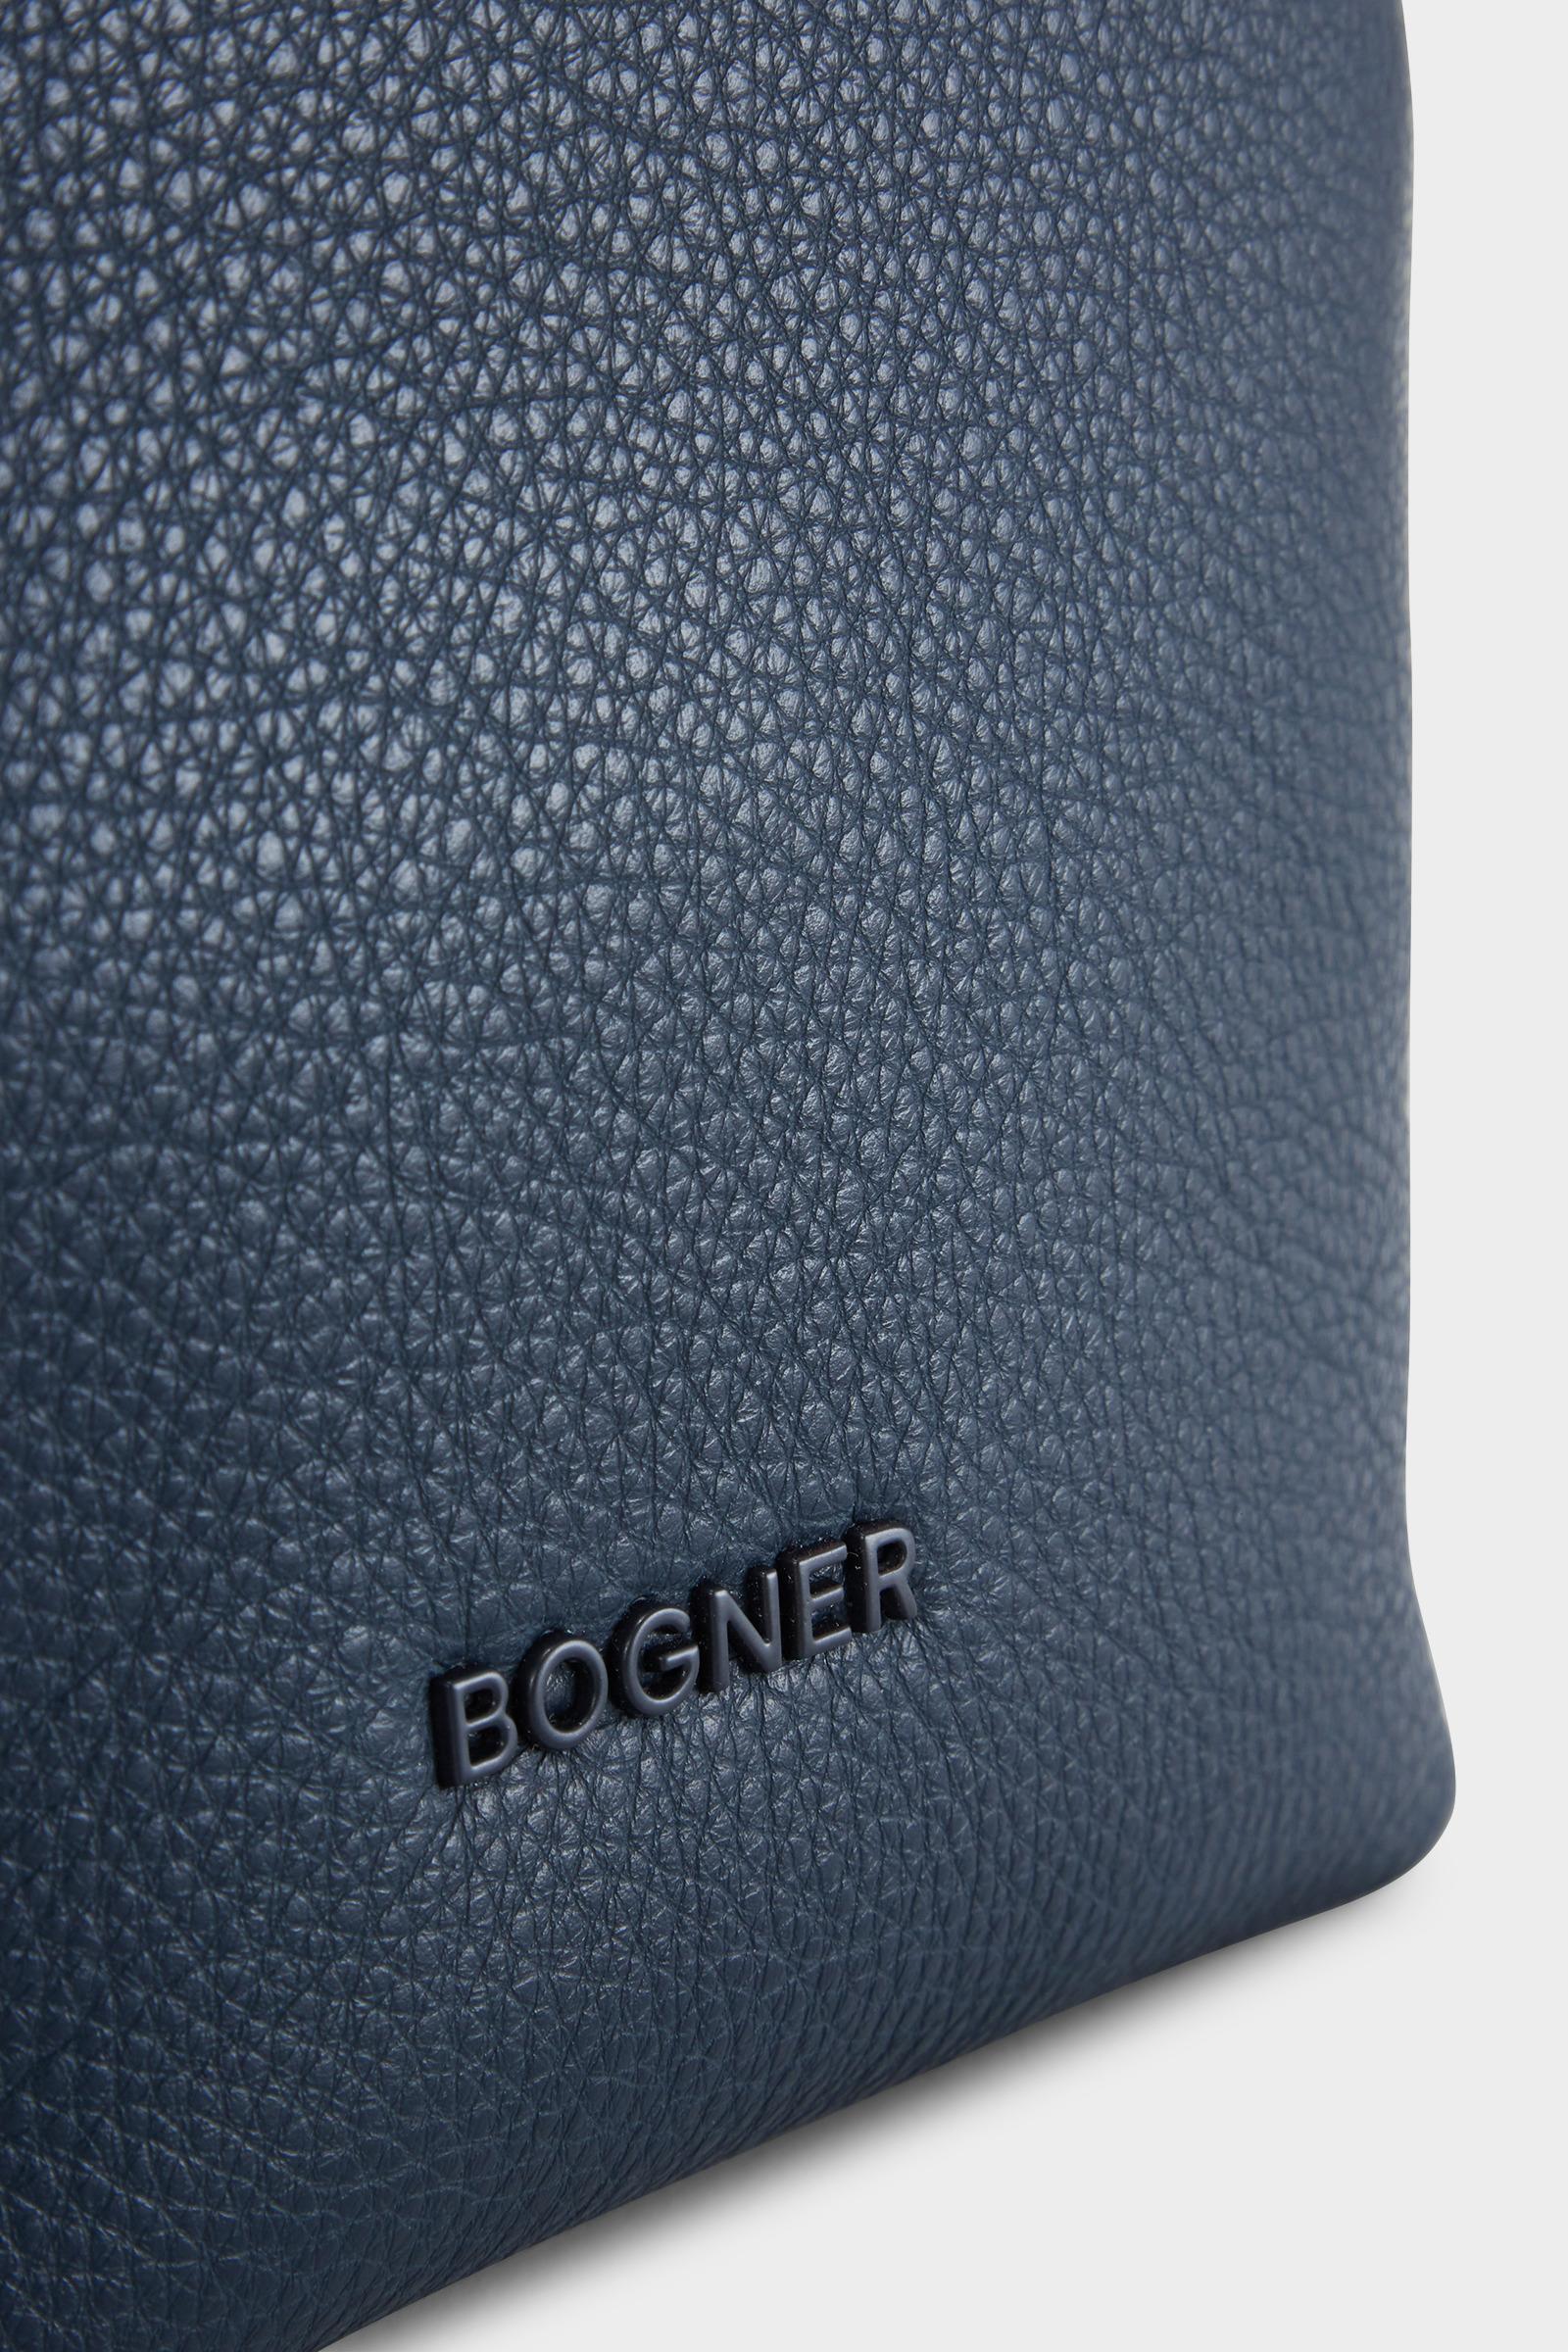 Bogner Leather Andermatt Flavia Shoulder Bag In Navy Blue - Save 41% - Lyst